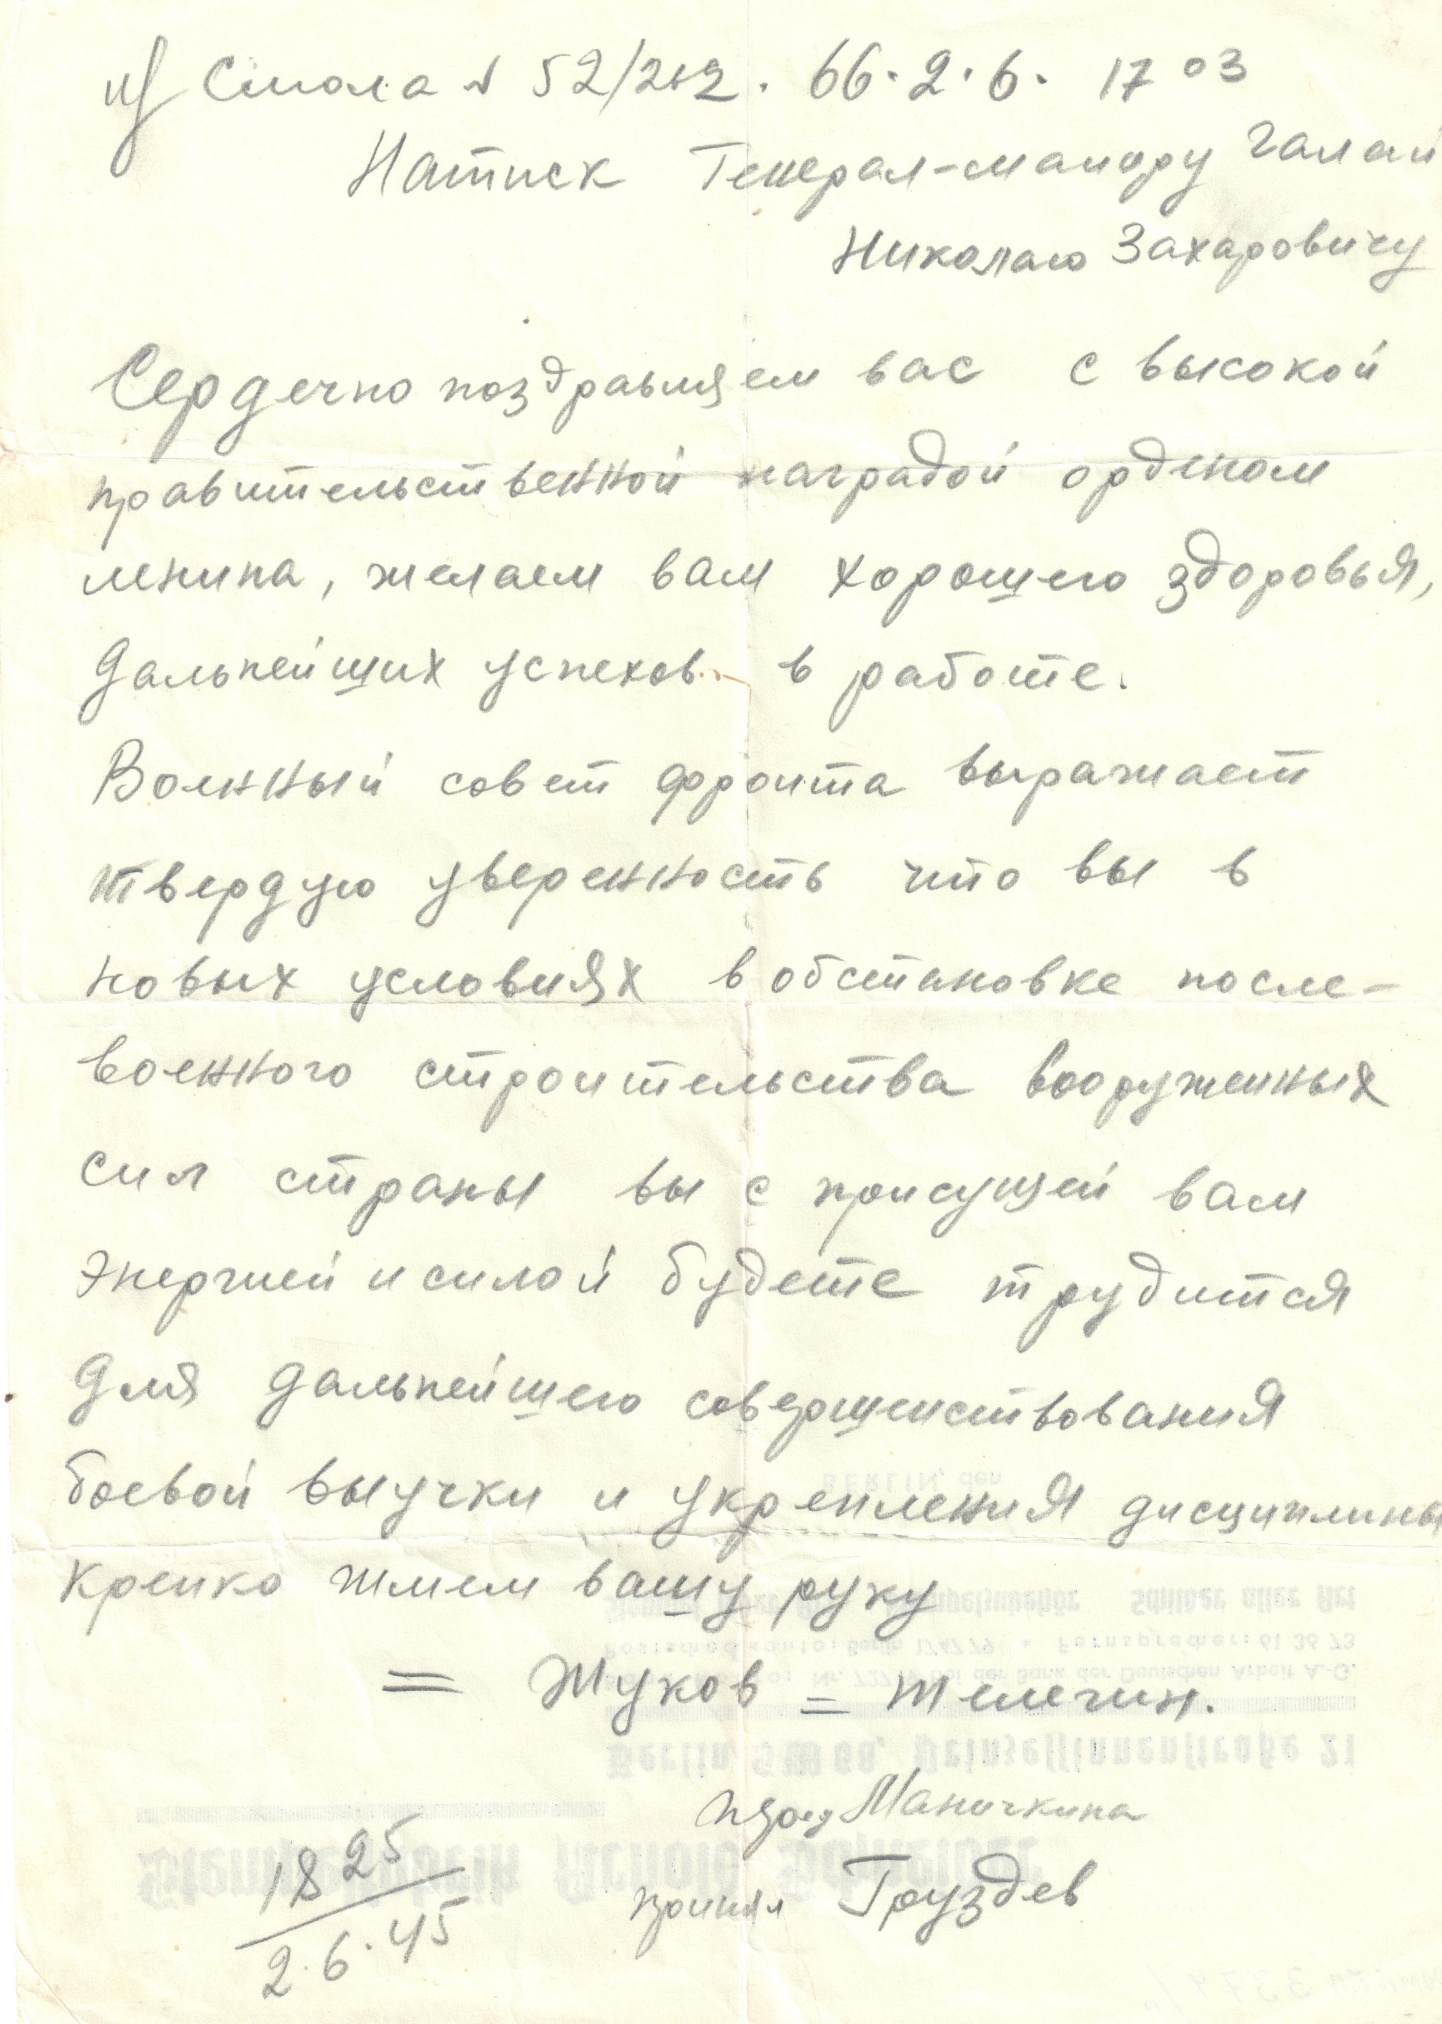 Телефонограмма генерал-майору Галаю Н.З. с поздравлением в связи с награждением орденом Ленина. 1945 год.